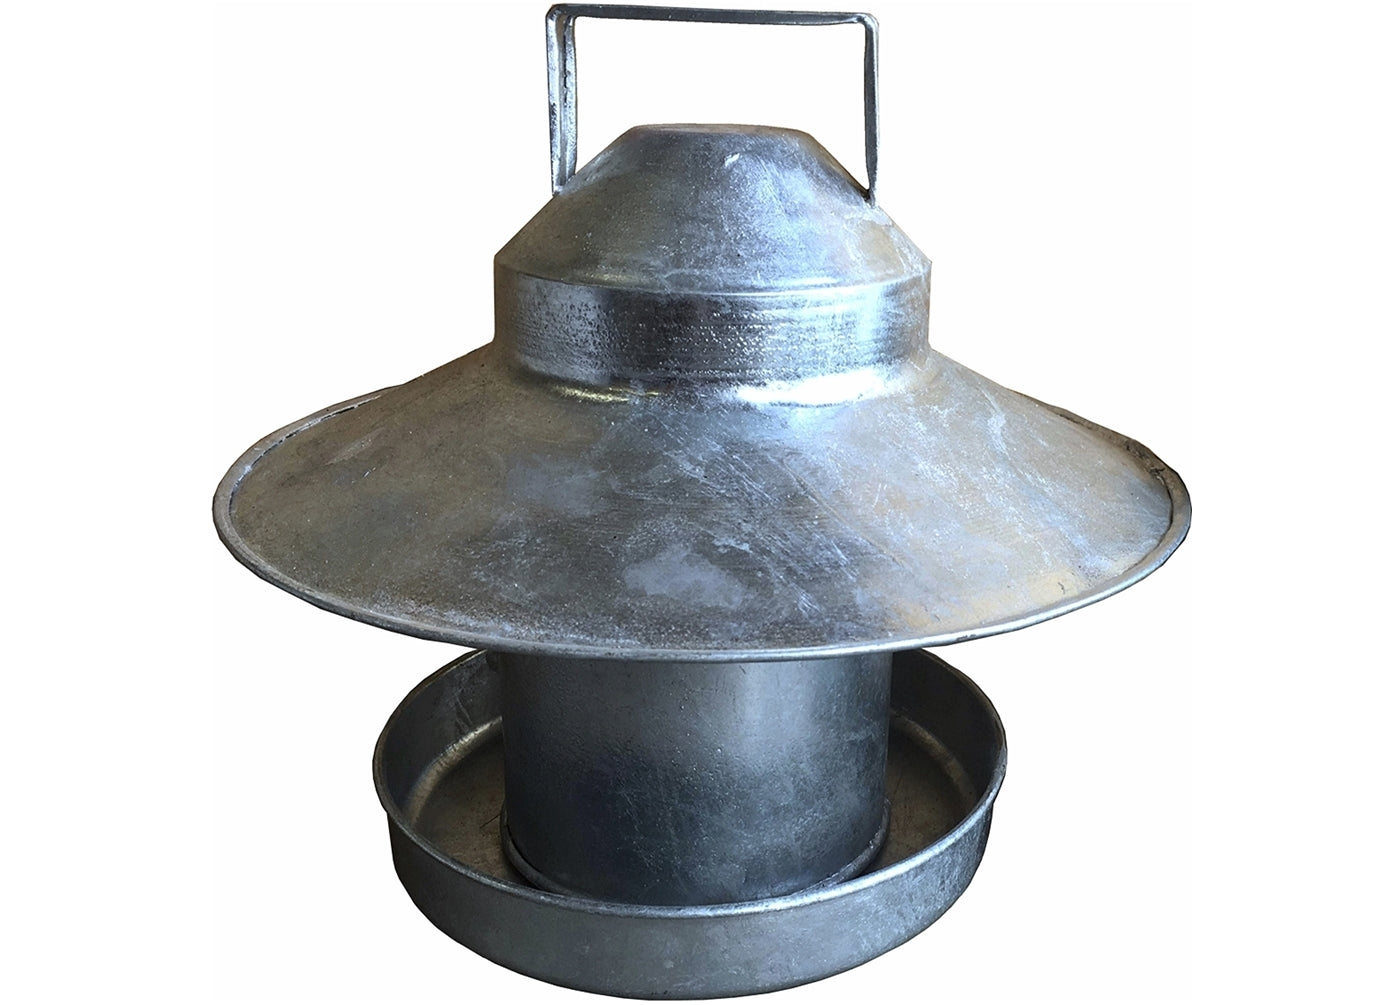 Galvanised Metal Poultry Feeder - 2.2kg Capacity